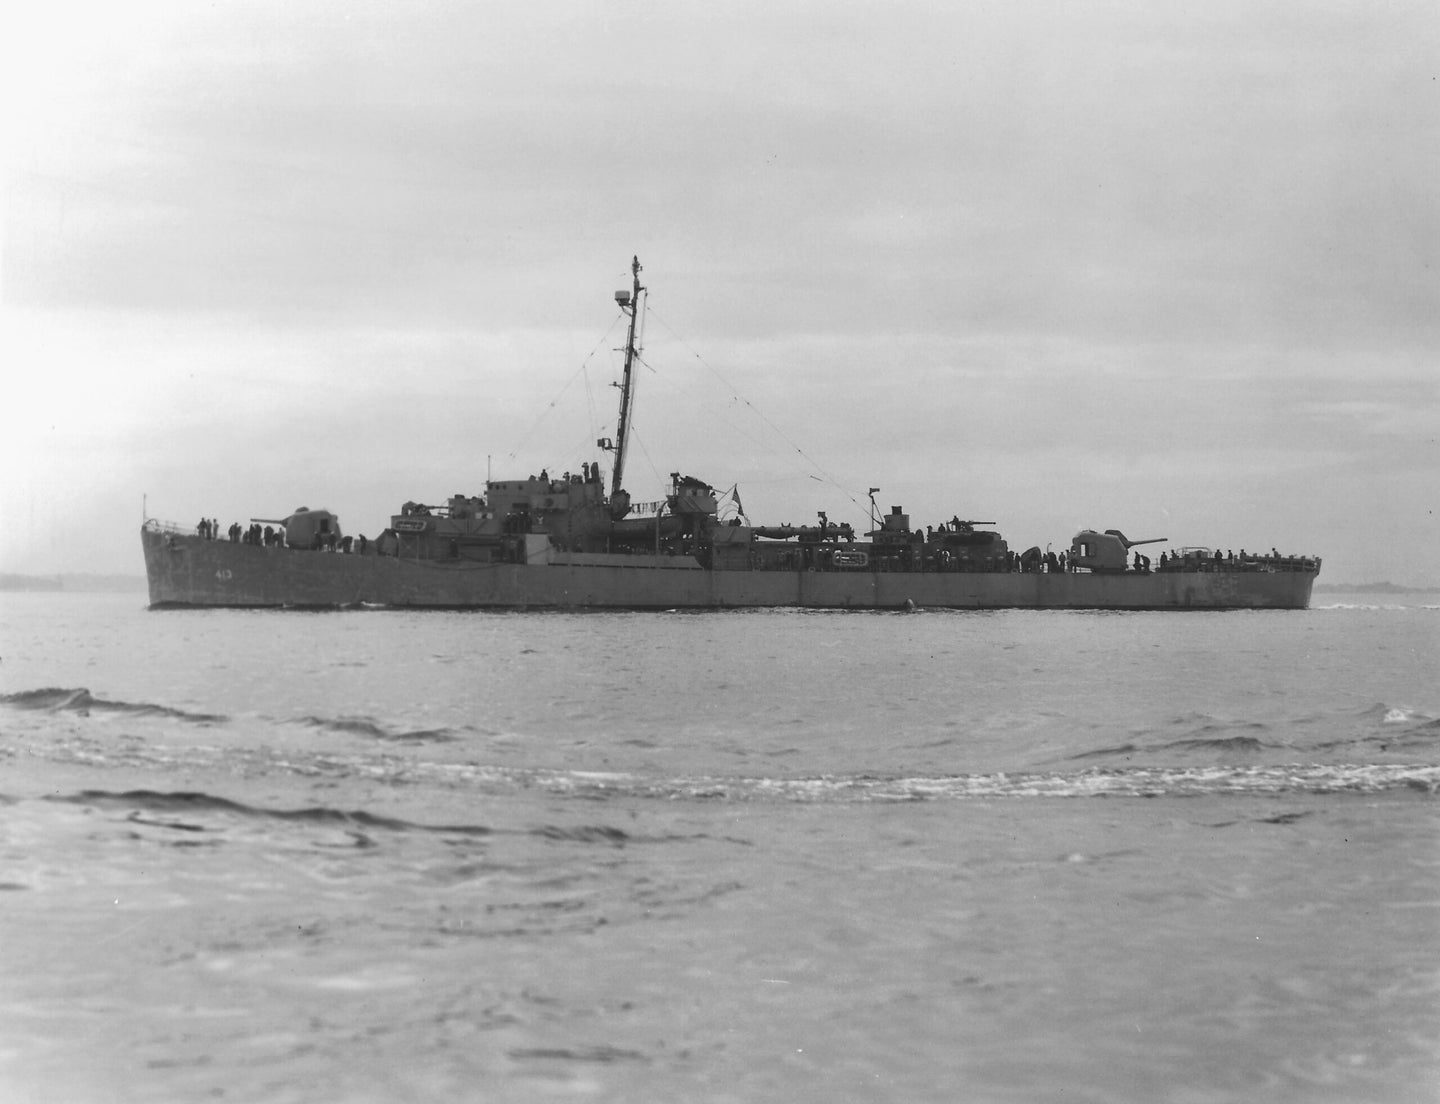 The U.S. Navy destroyer escort USS Samuel B. Roberts (DE-413) circa in June 1944. (U.S. Navy/Naval History & Heritage Command)